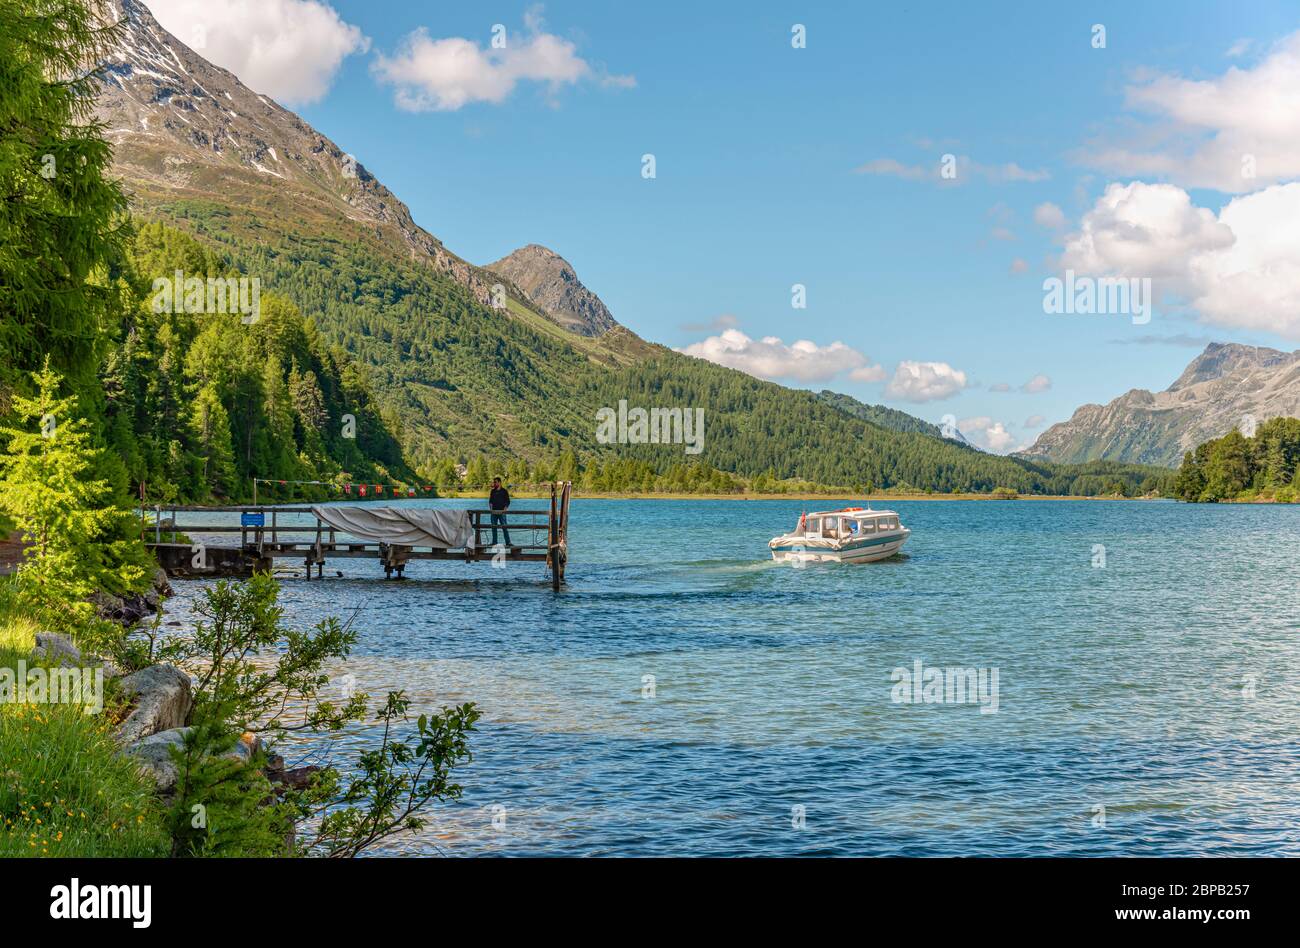 Navire de la plus haute ligne de navigation d'Europe sur le lac Sils, Engadin, Grisons, Suisse Banque D'Images